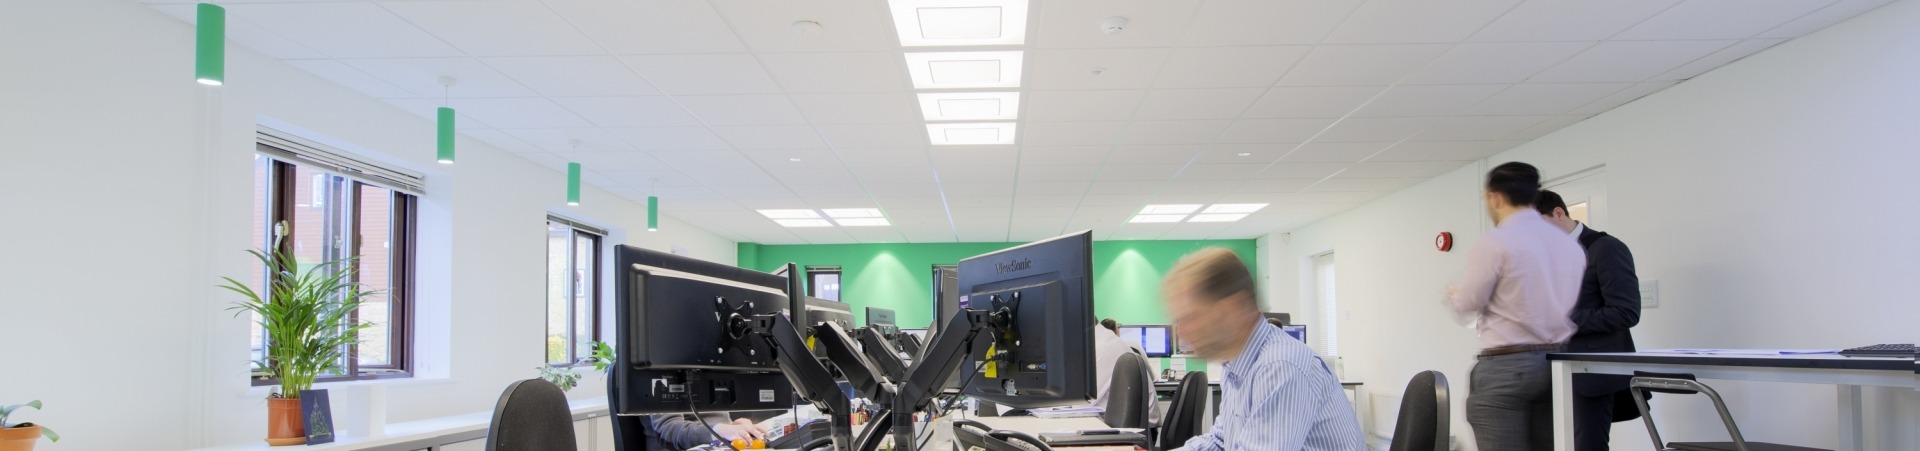 Tamlite CBG Consultants Oxford Office LED Lighting Case Study header